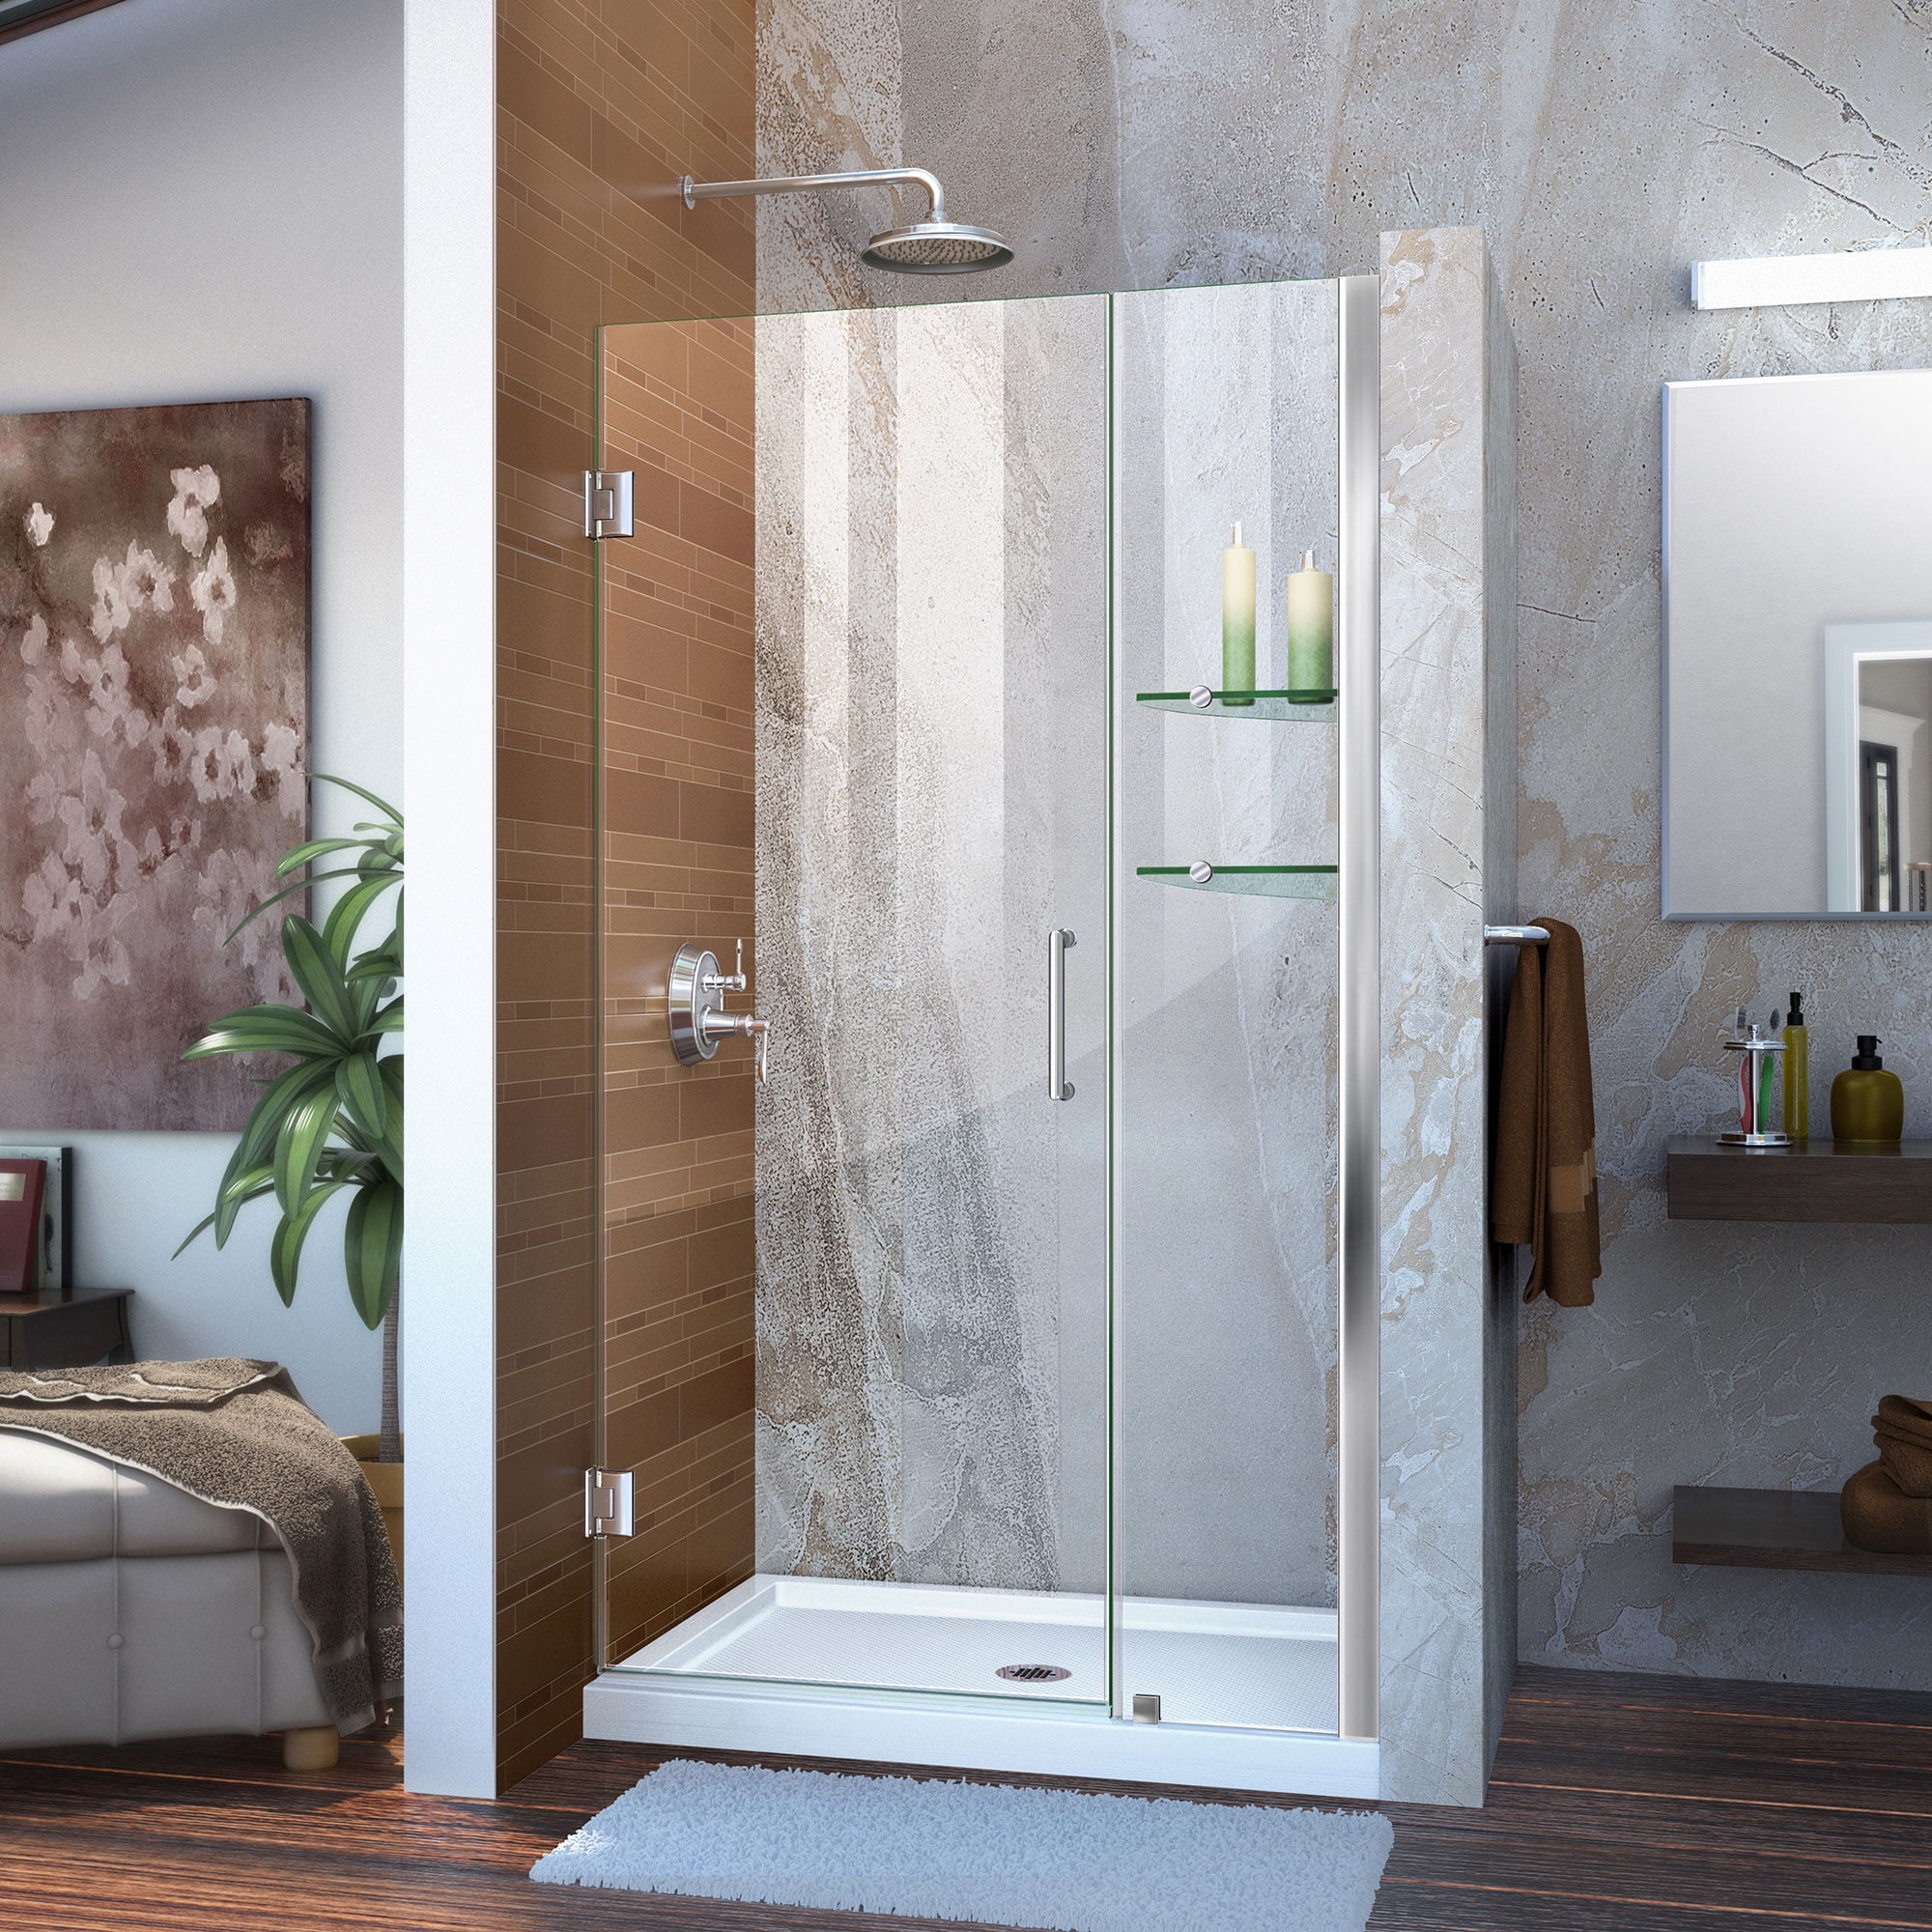 Unidoor 35 to 36" Frameless Hinged Shower Door, Clear 3/8" Glass Door, Chrome